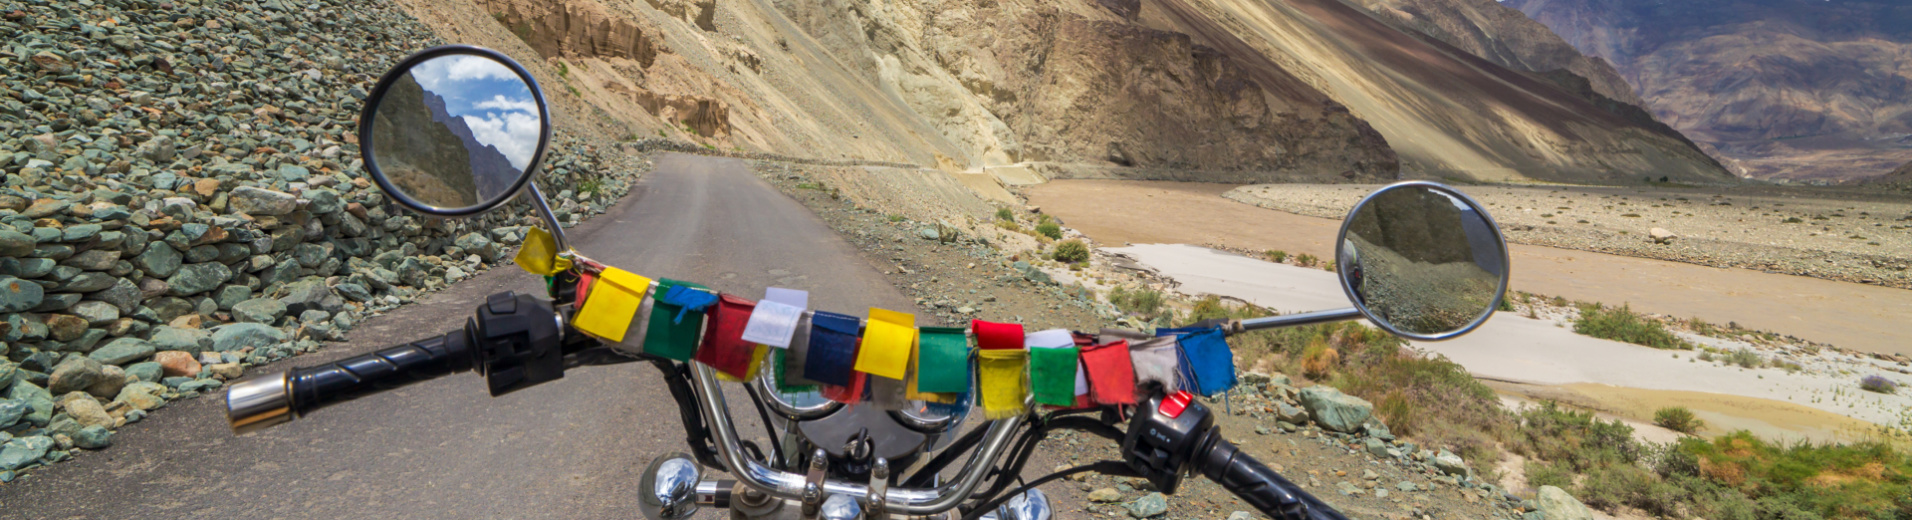 moto-royal-enfield-ladakh